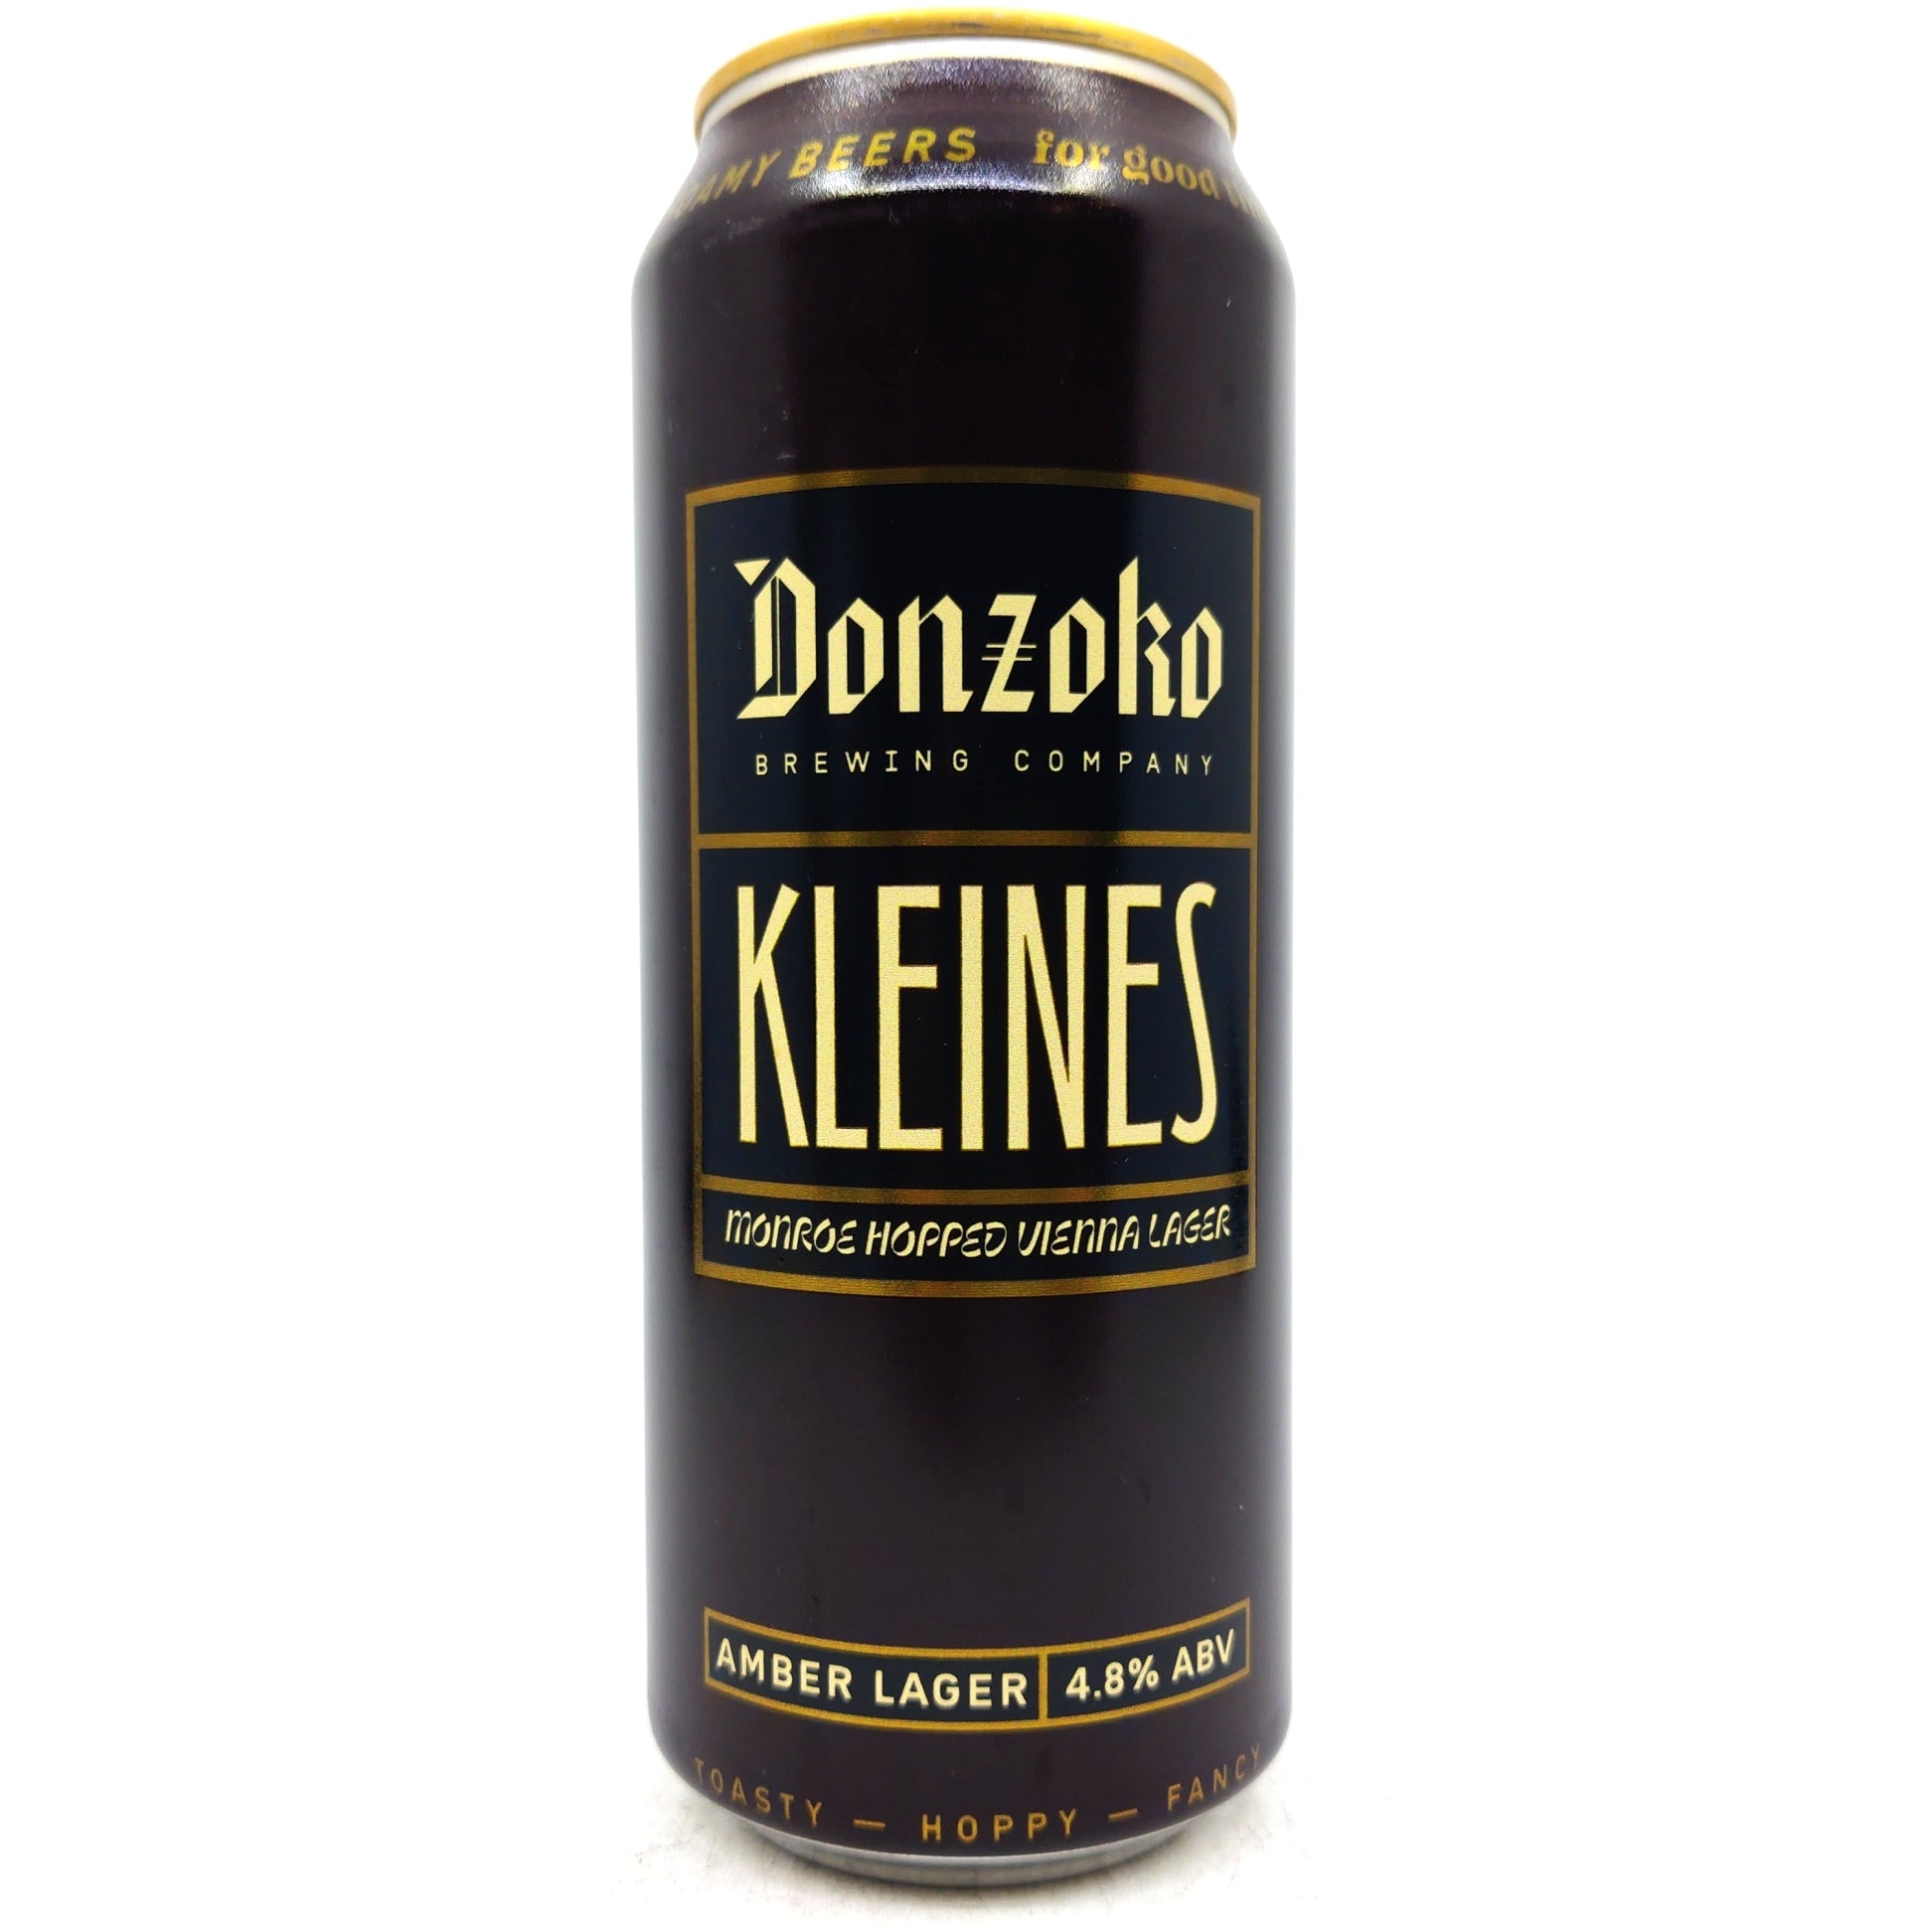 Donzoko Kleines Vienna Lager 4.8% (500ml can)-Hop Burns & Black